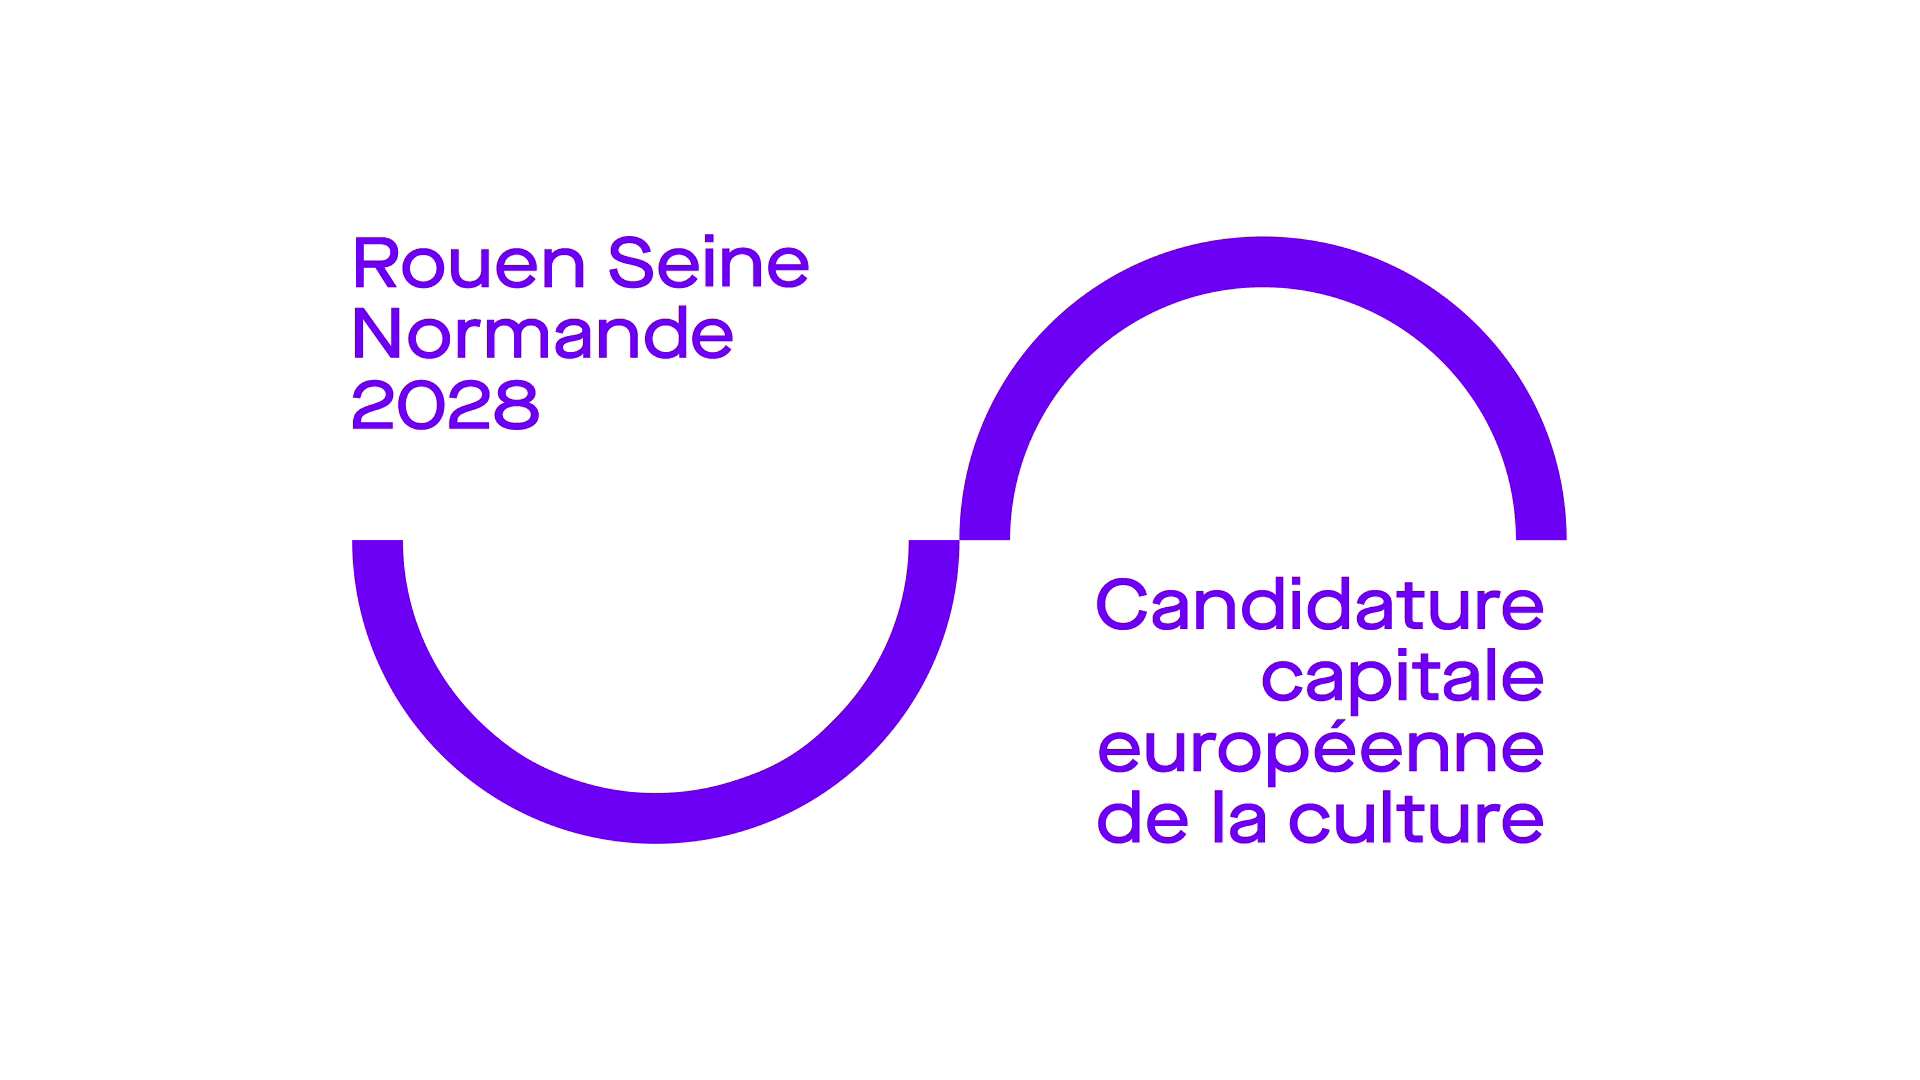 http://Rouen%202028%20Candidature%20capitale%20européenne%20de%20la%20culture